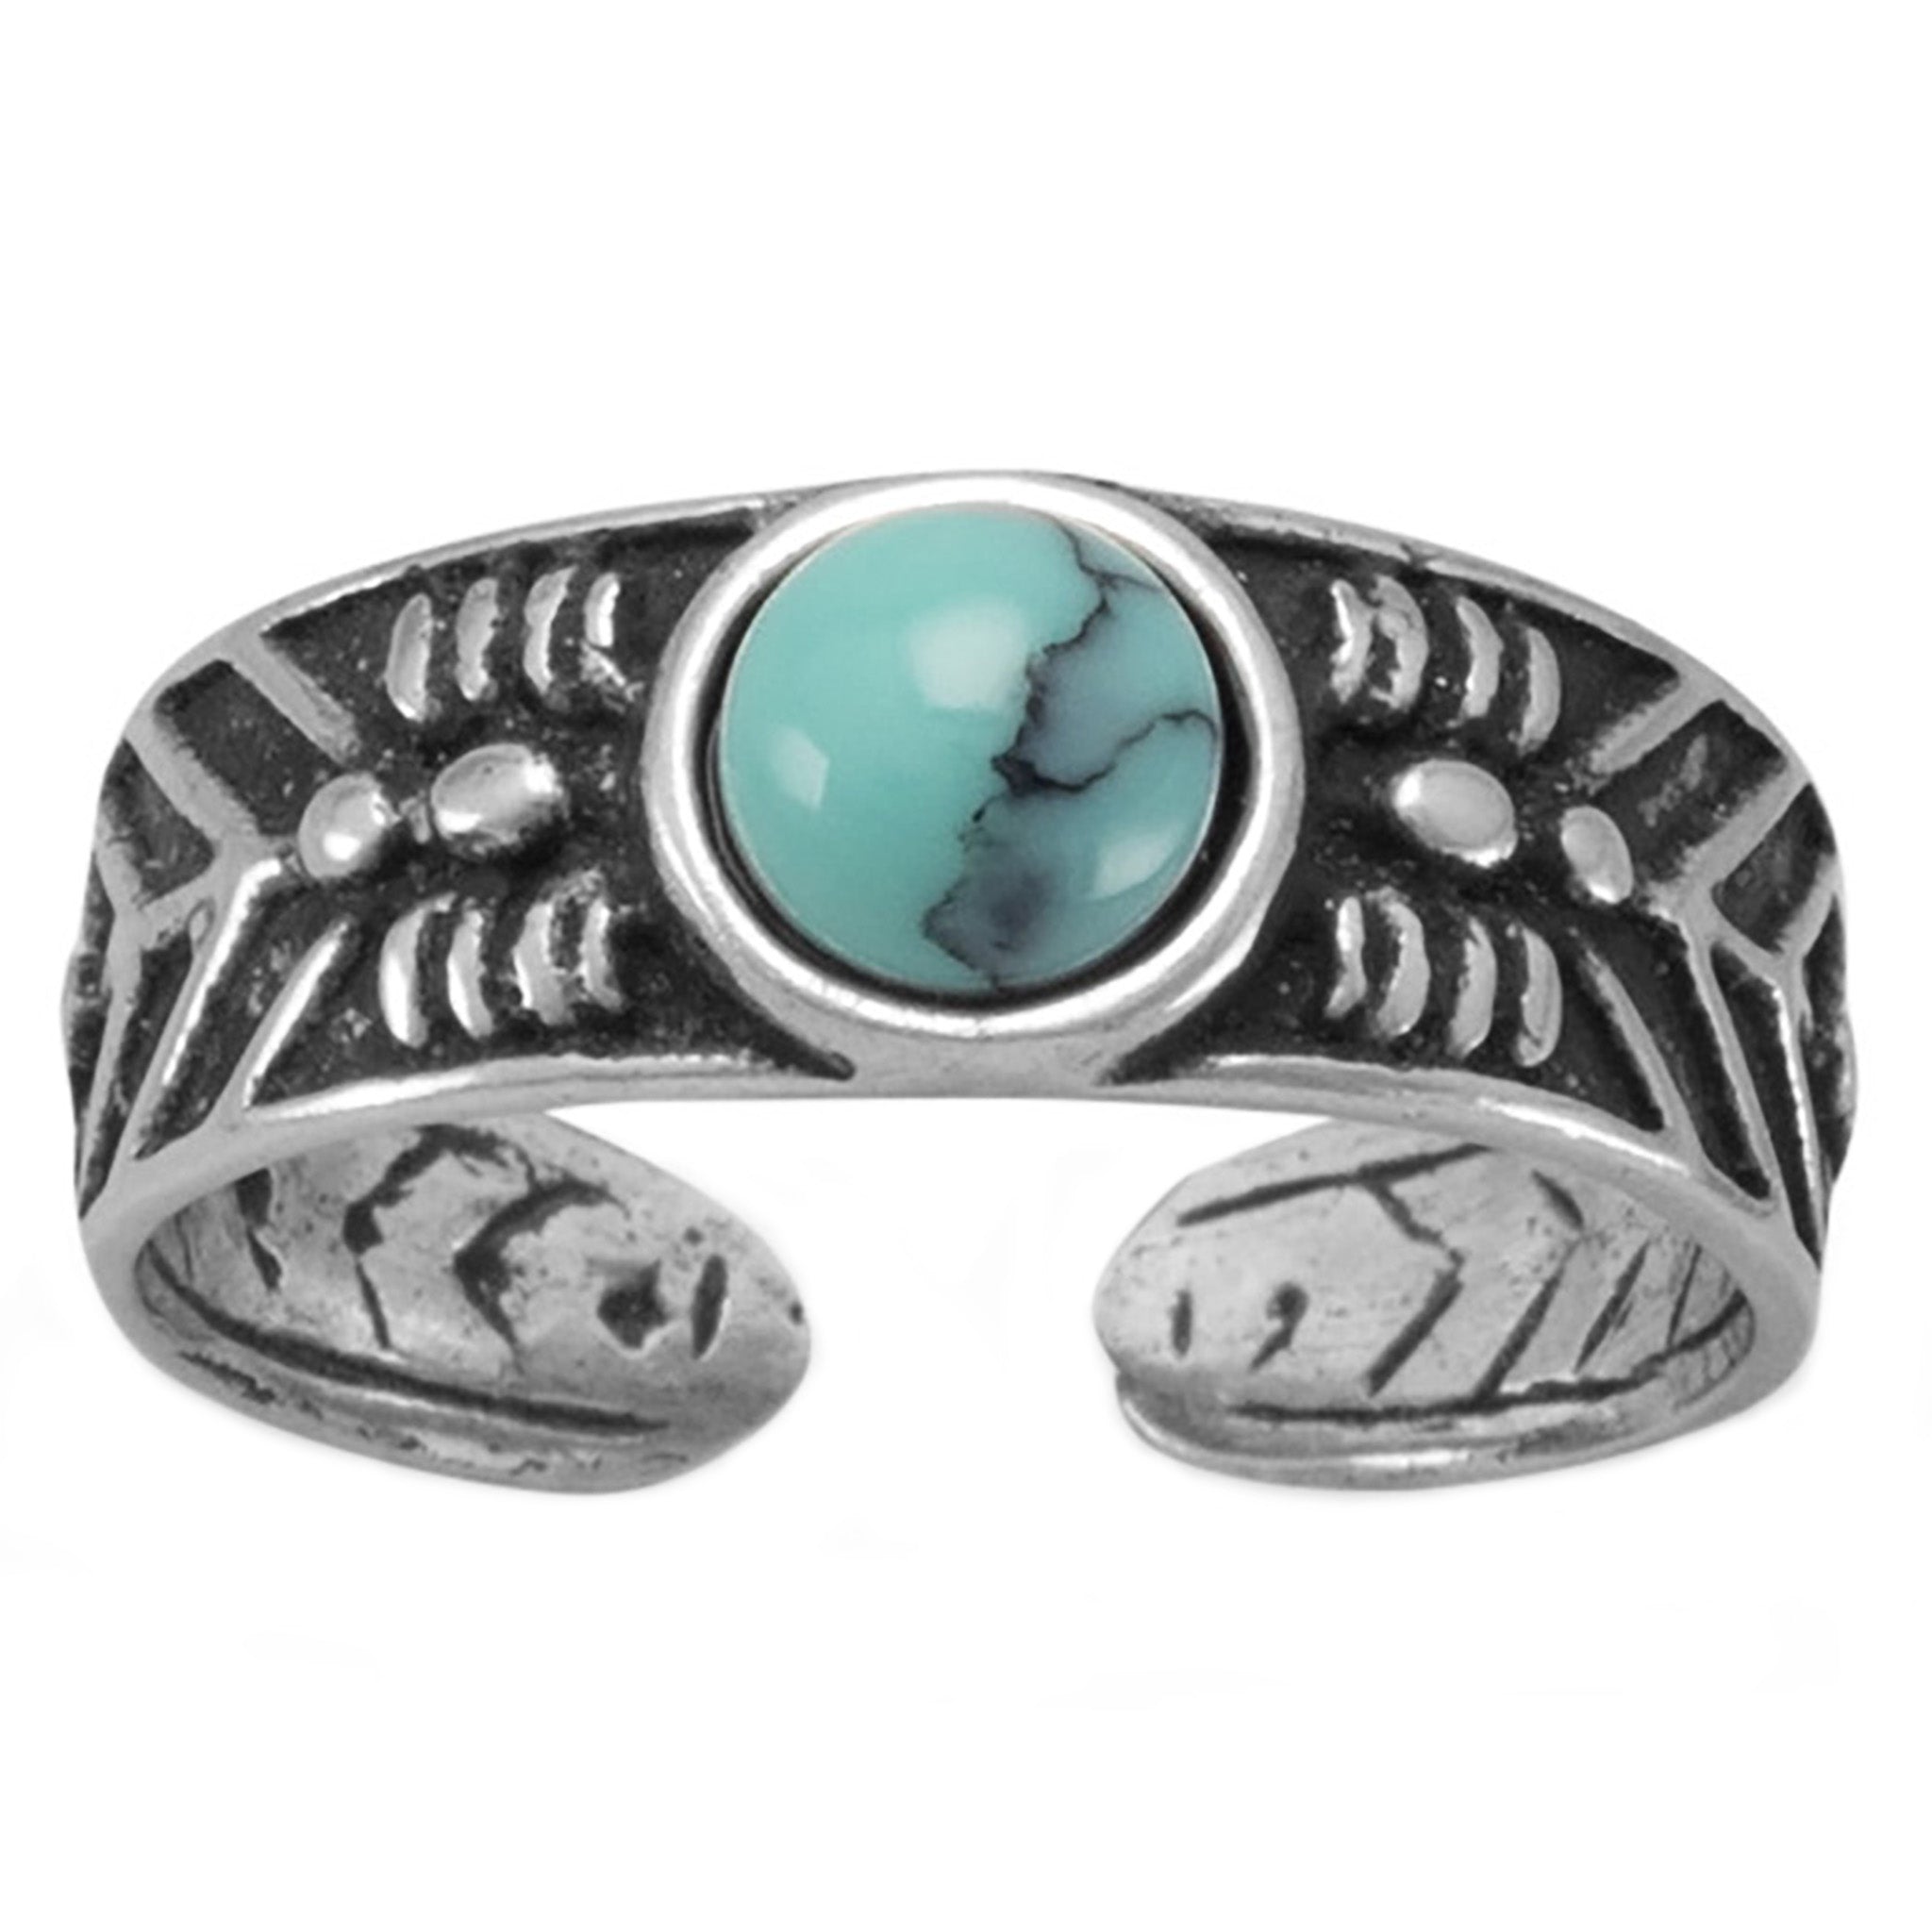 Southwest Style Turquoise Toe Ring